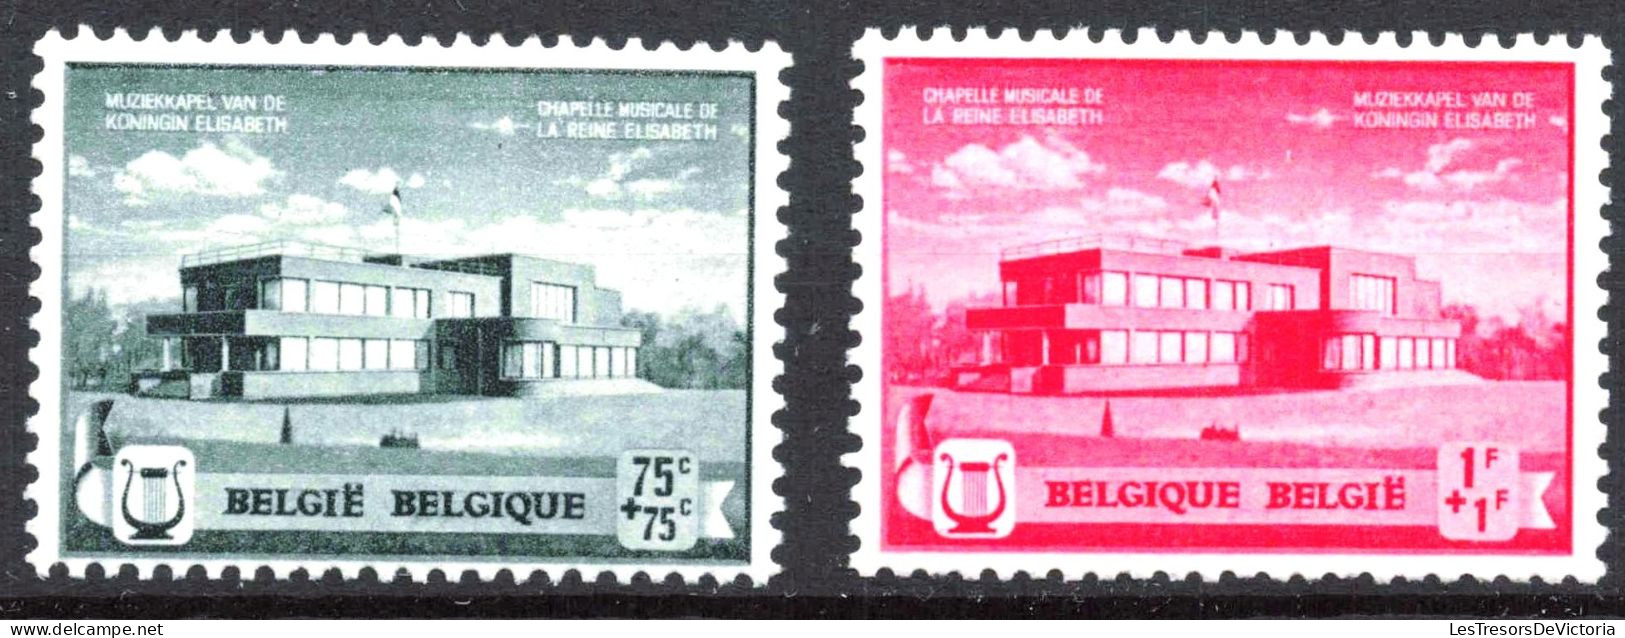 Timbre - Belgique - COB 532/37**MNH - 1940 - Cote 60 - Neufs